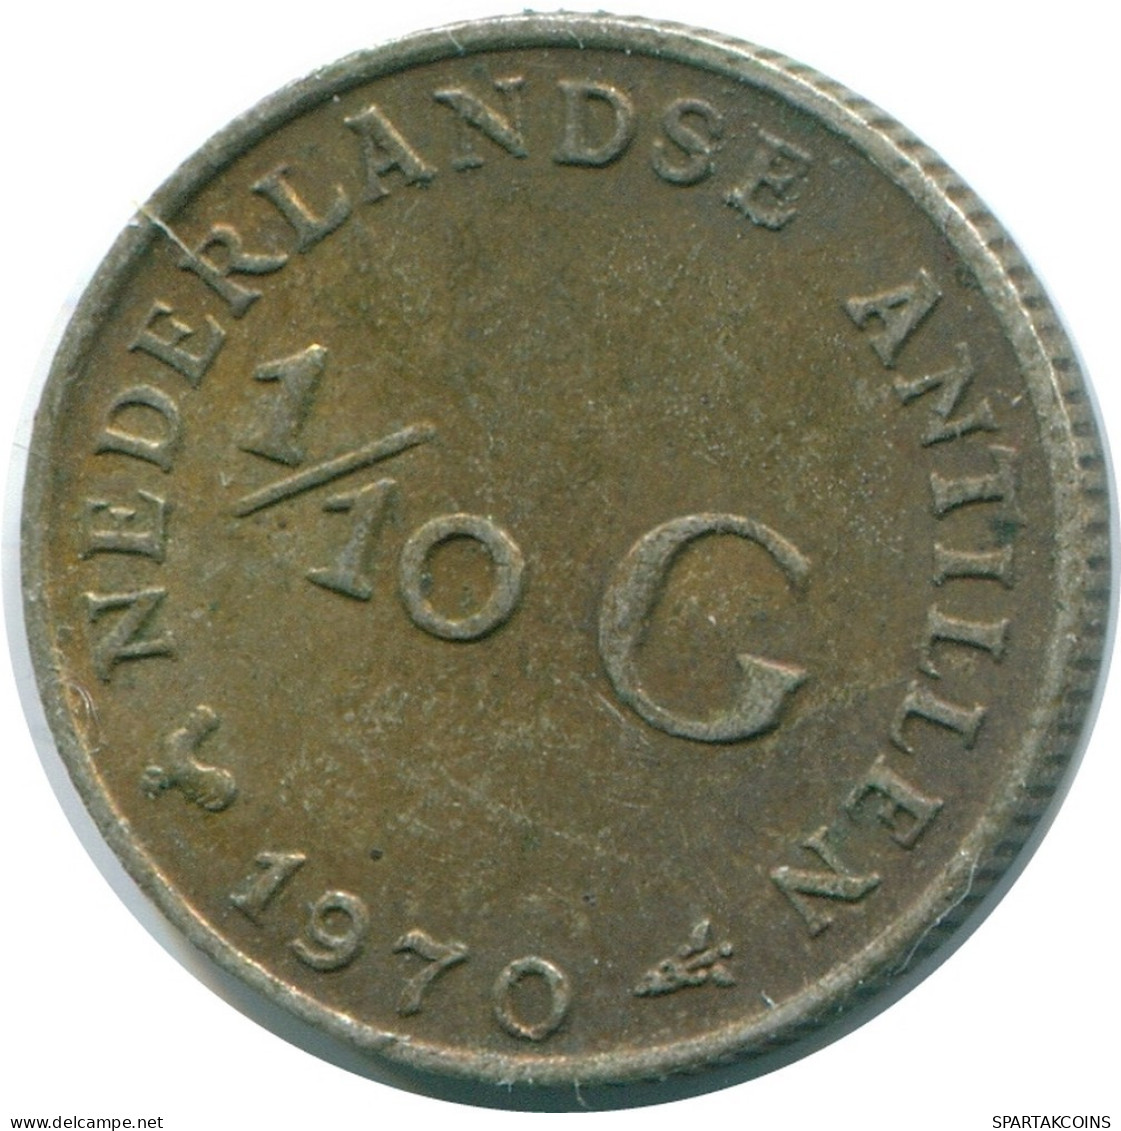 1/10 GULDEN 1970 NIEDERLÄNDISCHE ANTILLEN SILBER Koloniale Münze #NL13117.3.D.A - Niederländische Antillen